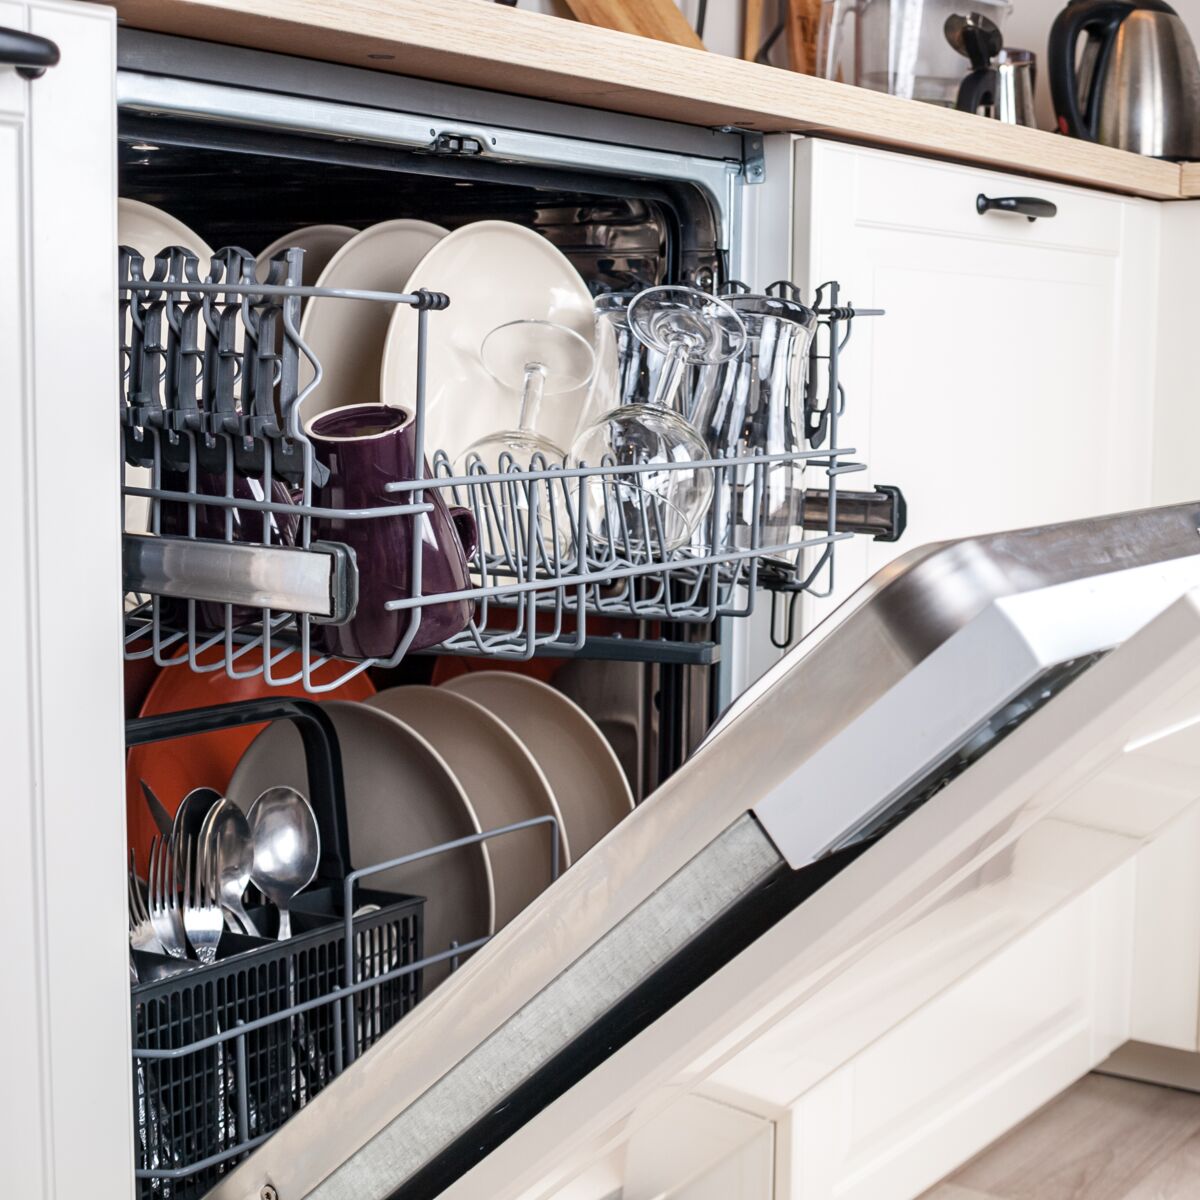 7 choses à ne pas mettre au lave-vaisselle - Cuisine Actuelle